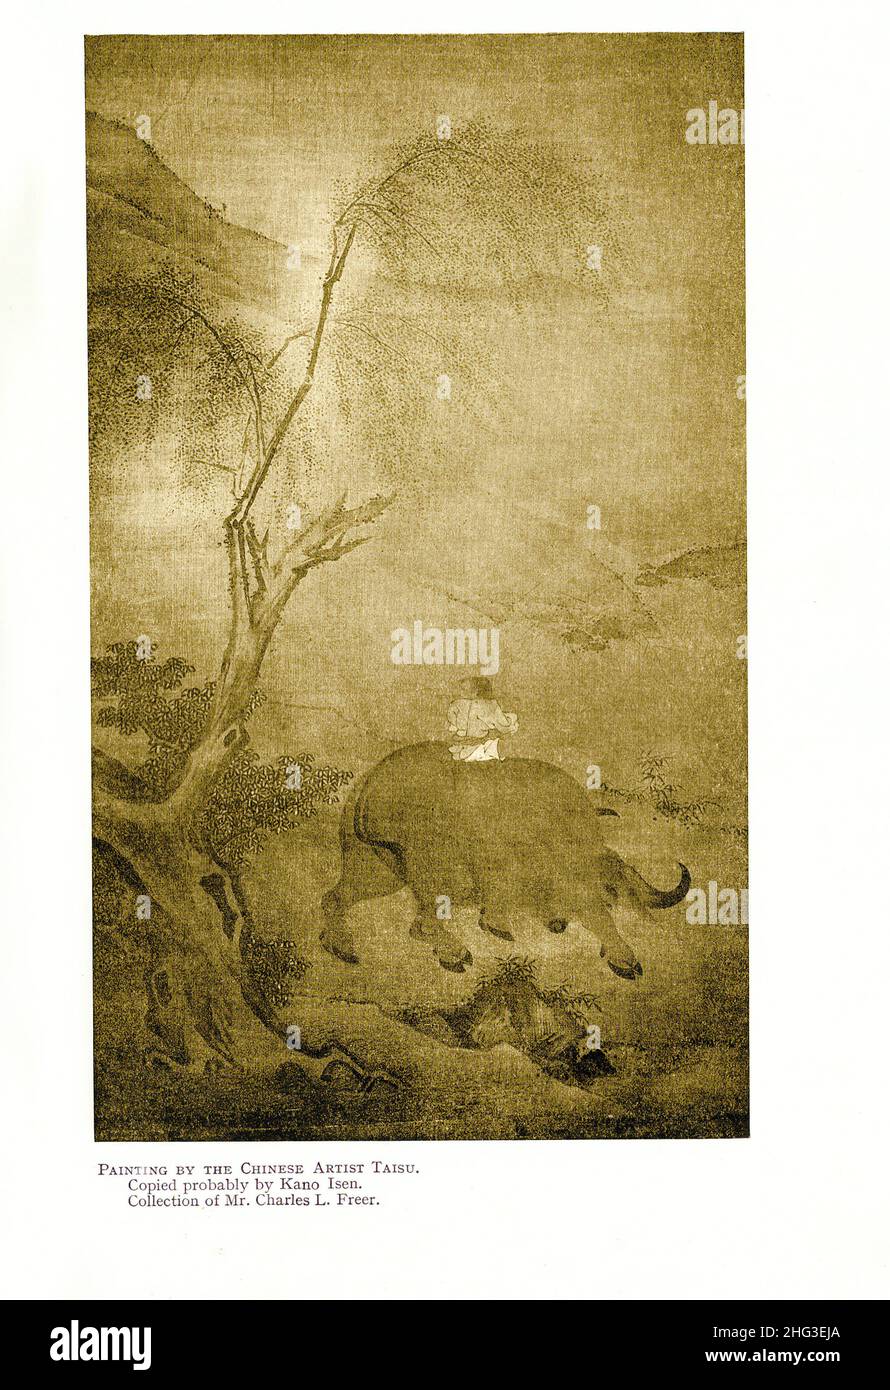 Peinture médiévale chinoise de l'artiste chinois Taisu.Peinture de l'école de Northern Song.Copié probablement par Kano Isen.Reproduction du livre illus Banque D'Images